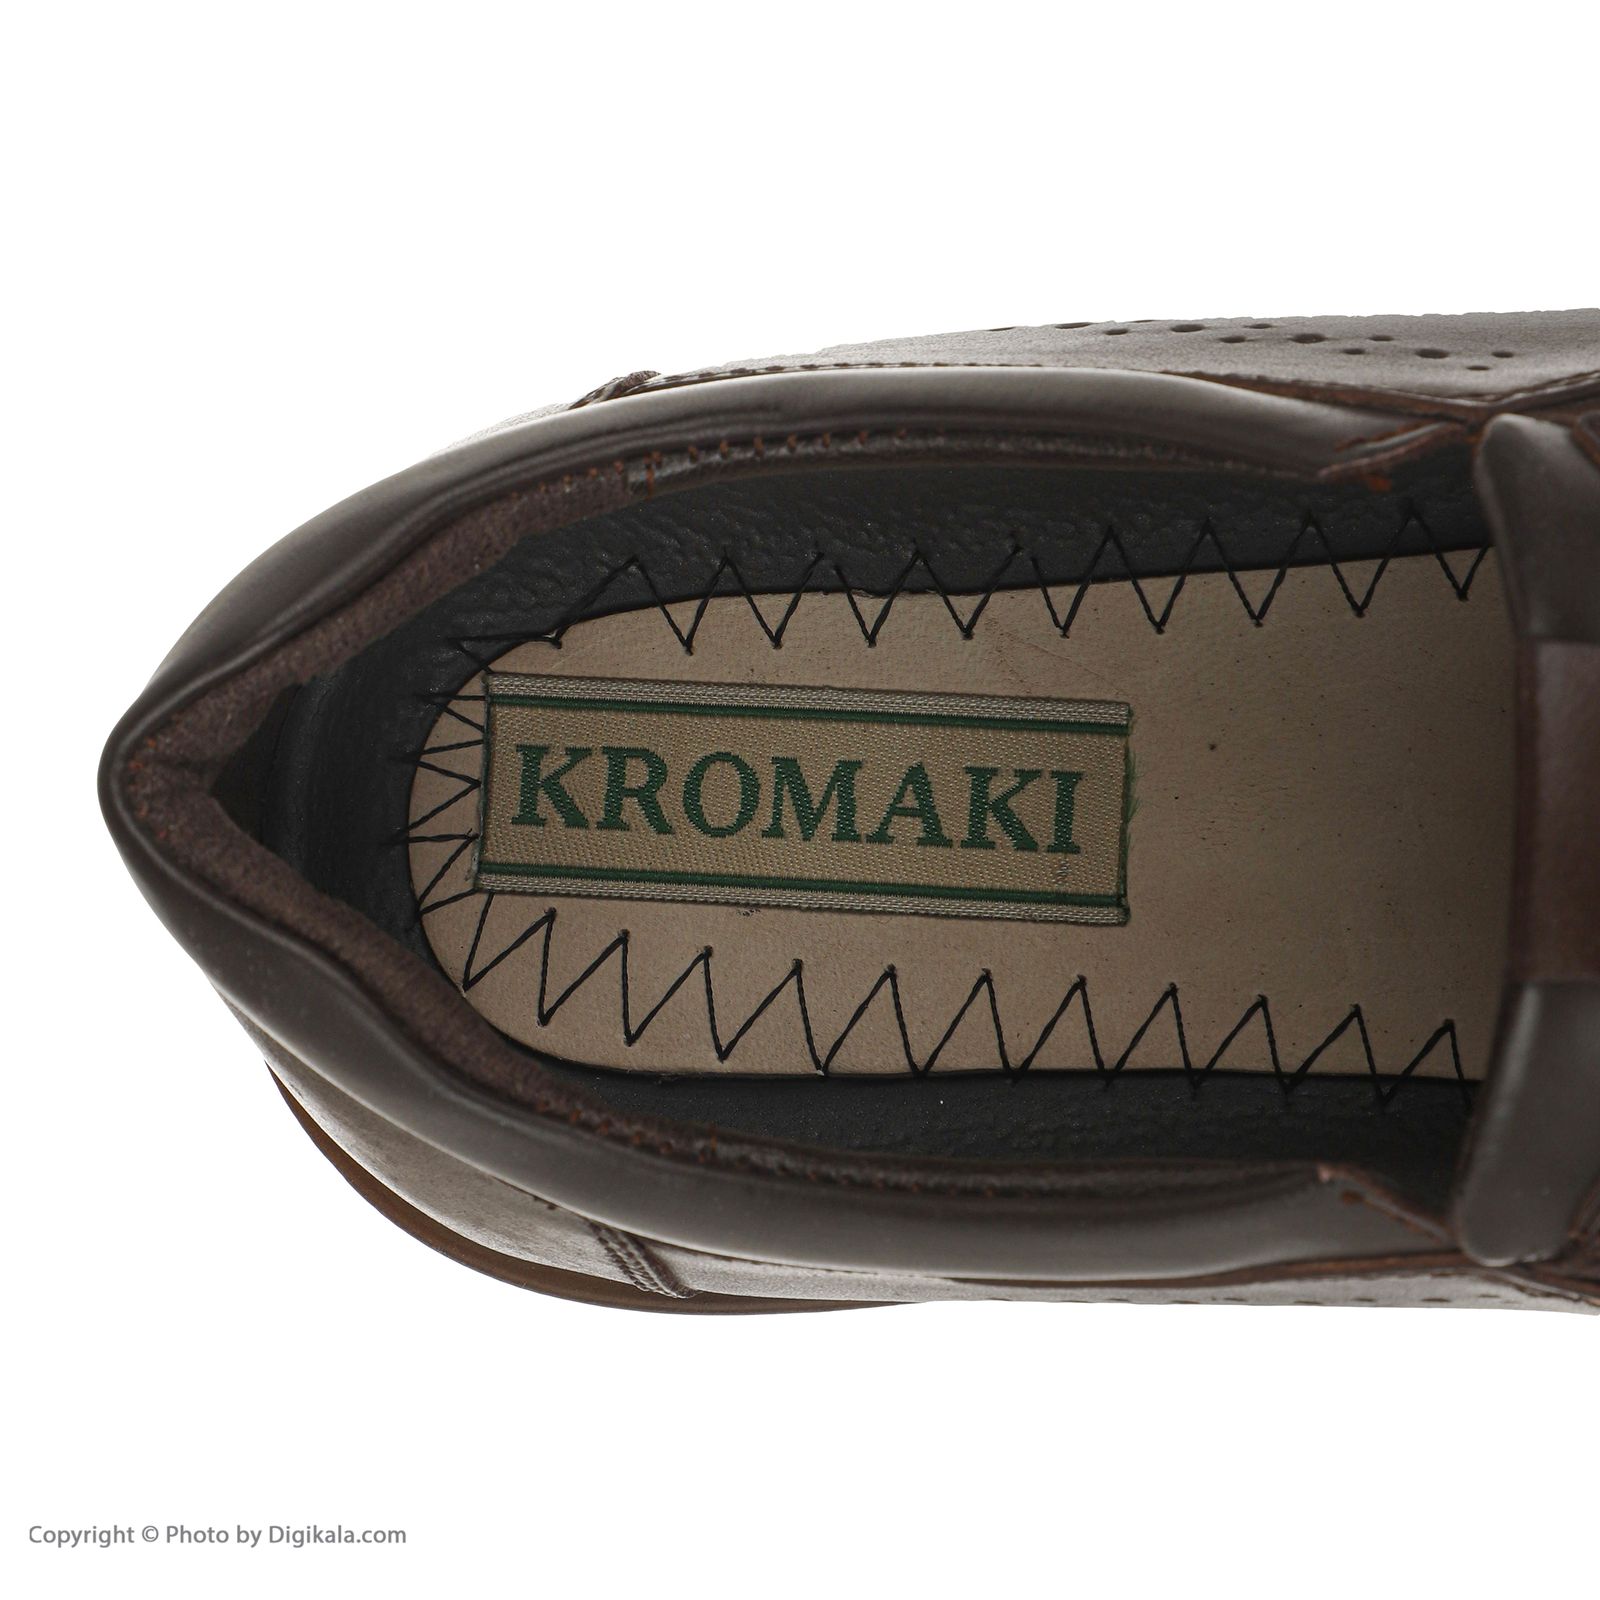 کفش مردانه کروماکی مدل km11123 -  - 4